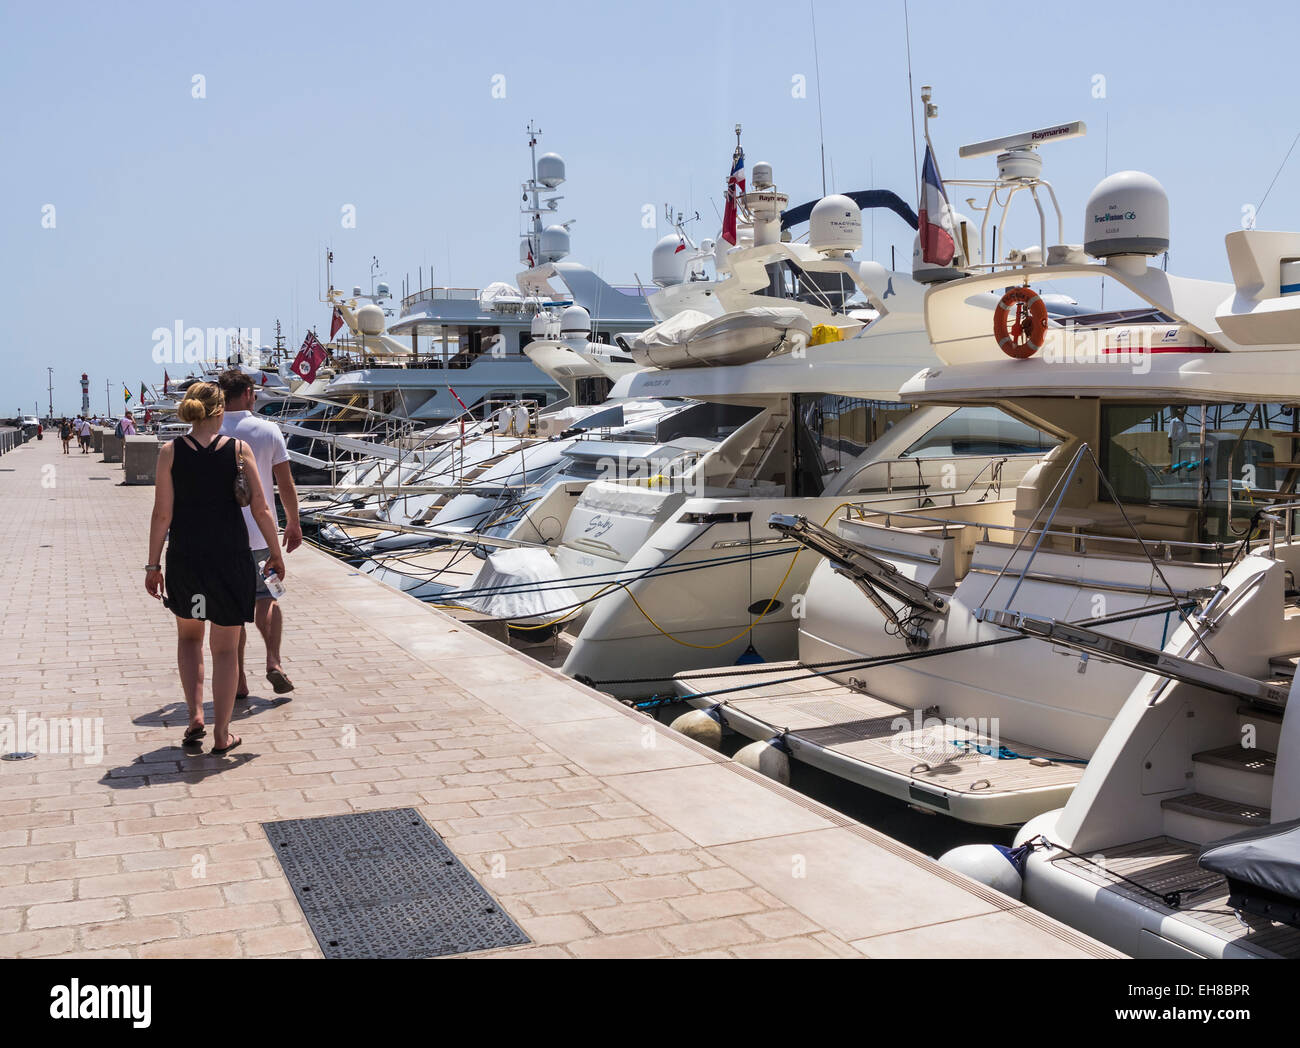 Cannes, Riviera Francesa, Cote d'Azur, Francia, Europa - Barcos / Yates de lujo en el puerto. Foto de stock